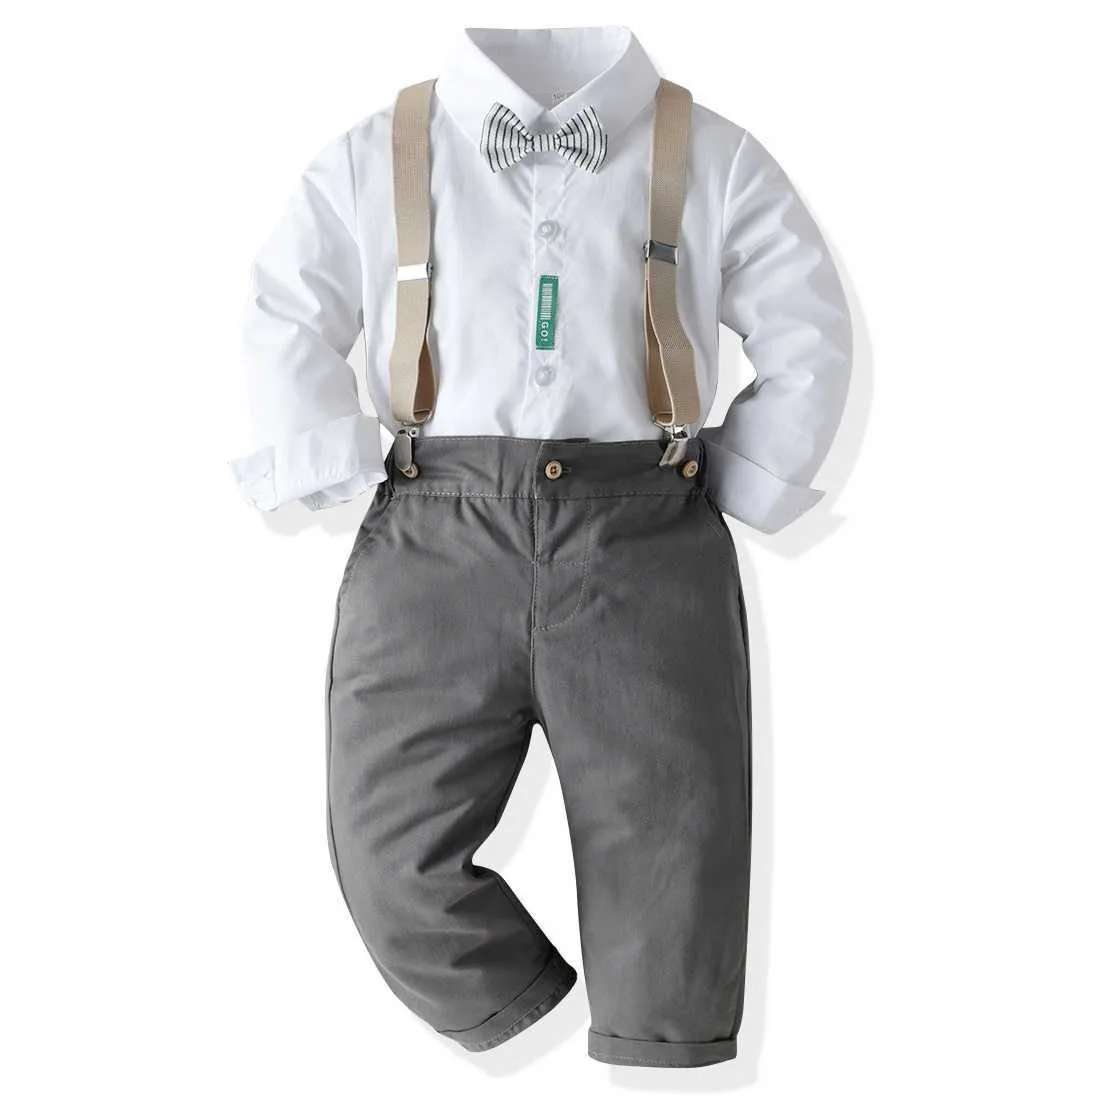 2021 Modna odzież dziecięca Zestawy Biała Koszula Formalne UbraniaBoutique Dzieci Odzież Dżentelmen Garnitur Boys Stroje Ropa de Beebe H1023